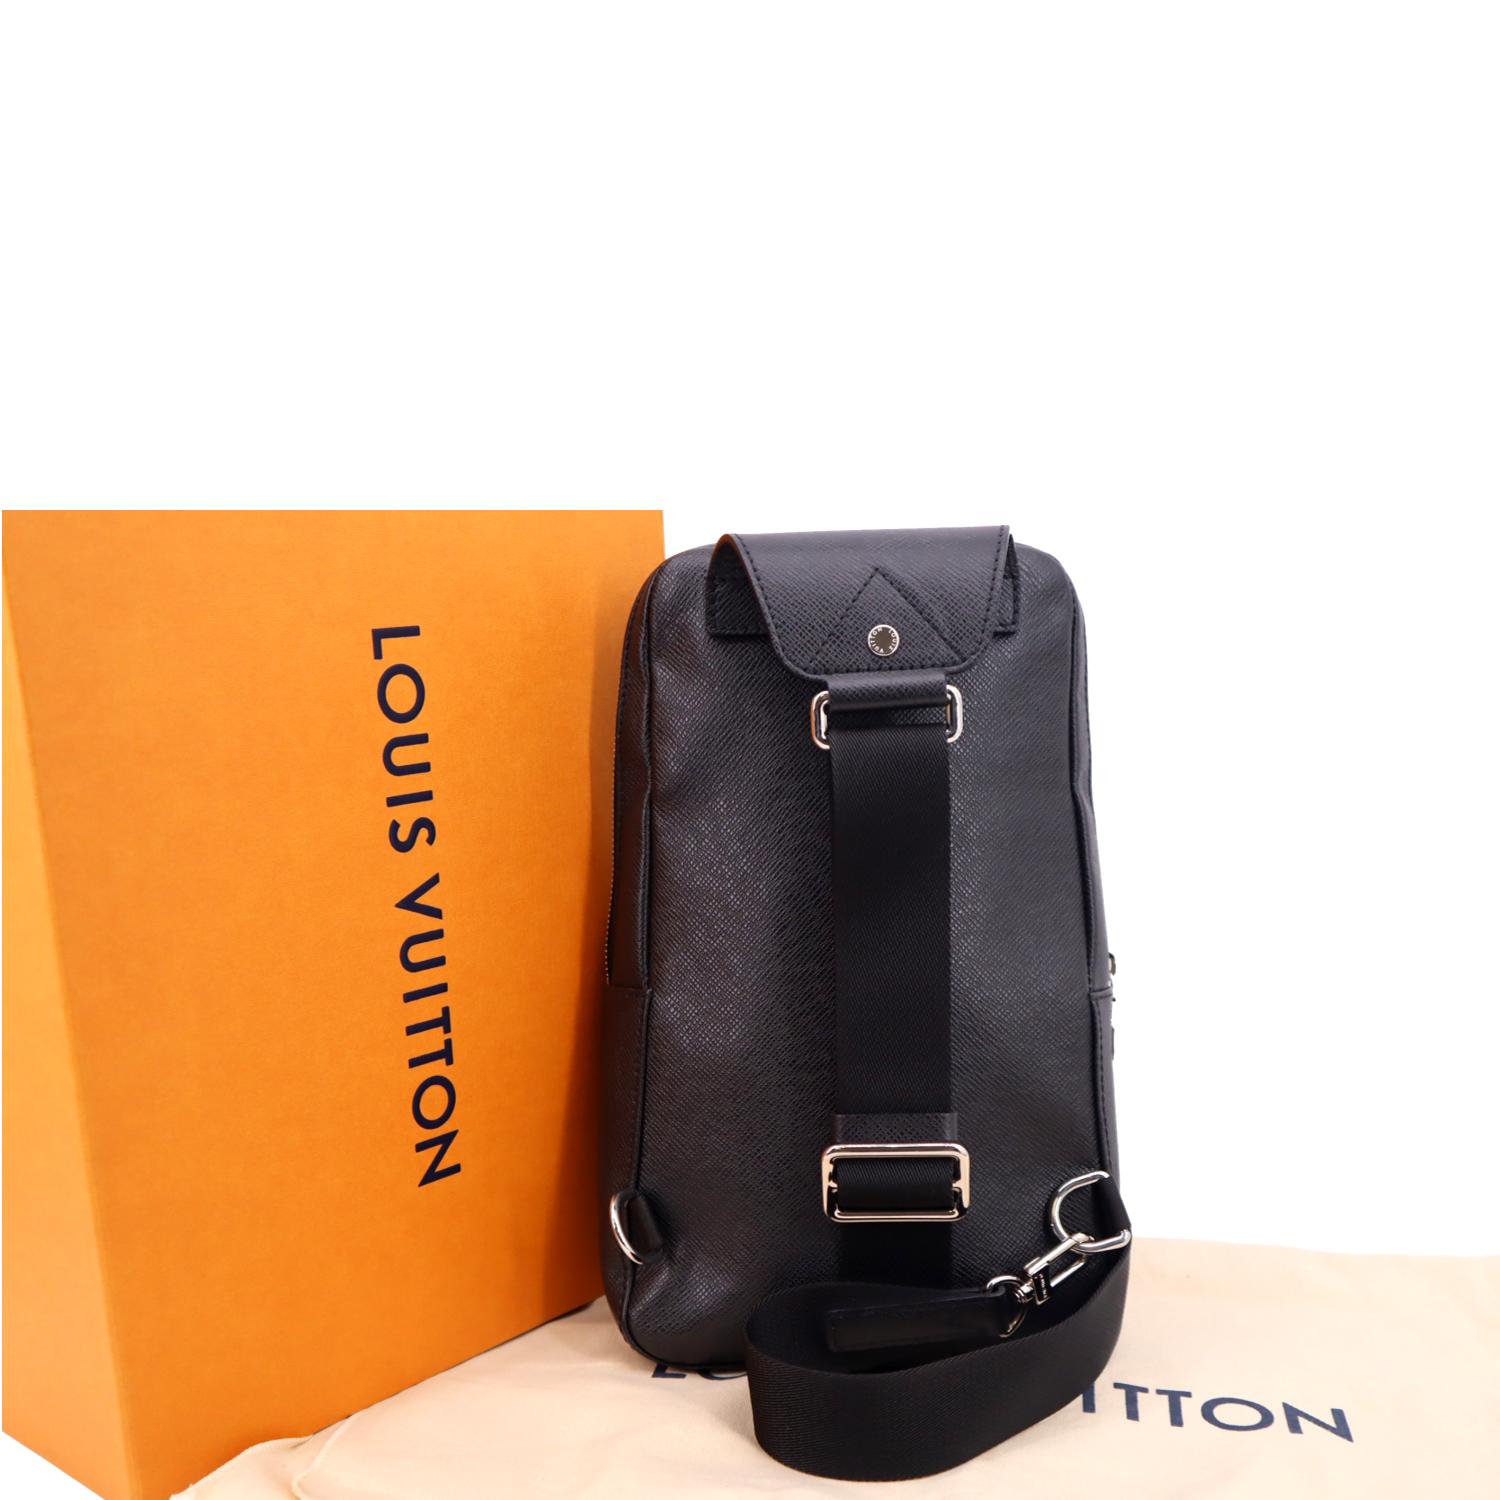 Louis Vuitton M33438 Taiga Leather Bum Bag Body Bag Black Color For Women  & Men